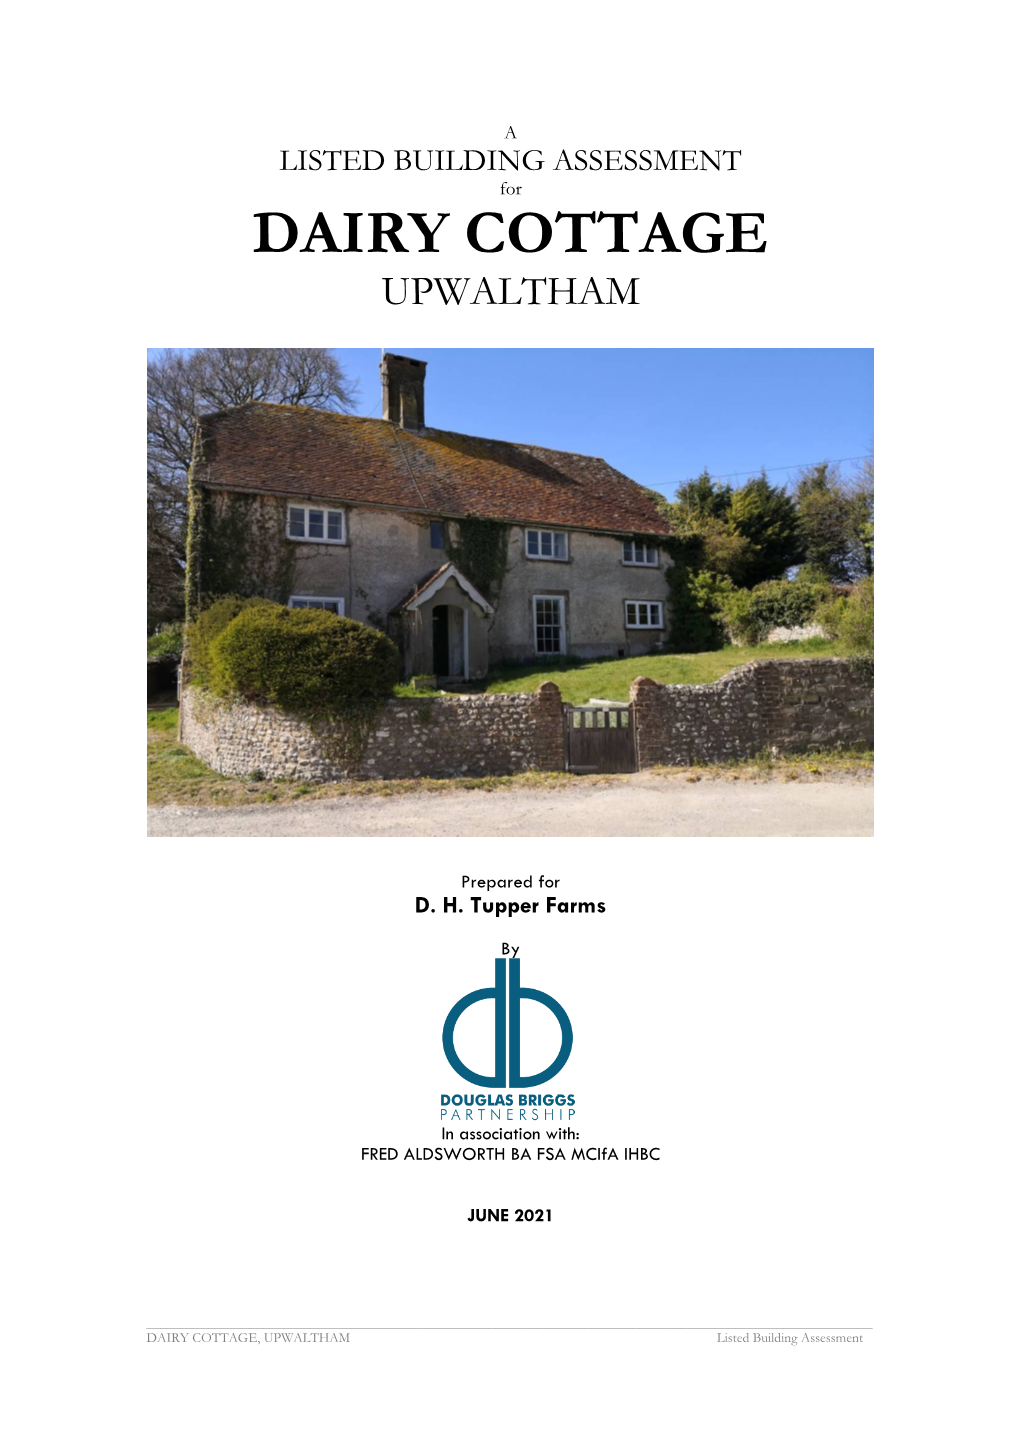 Dairy Cottage Upwaltham